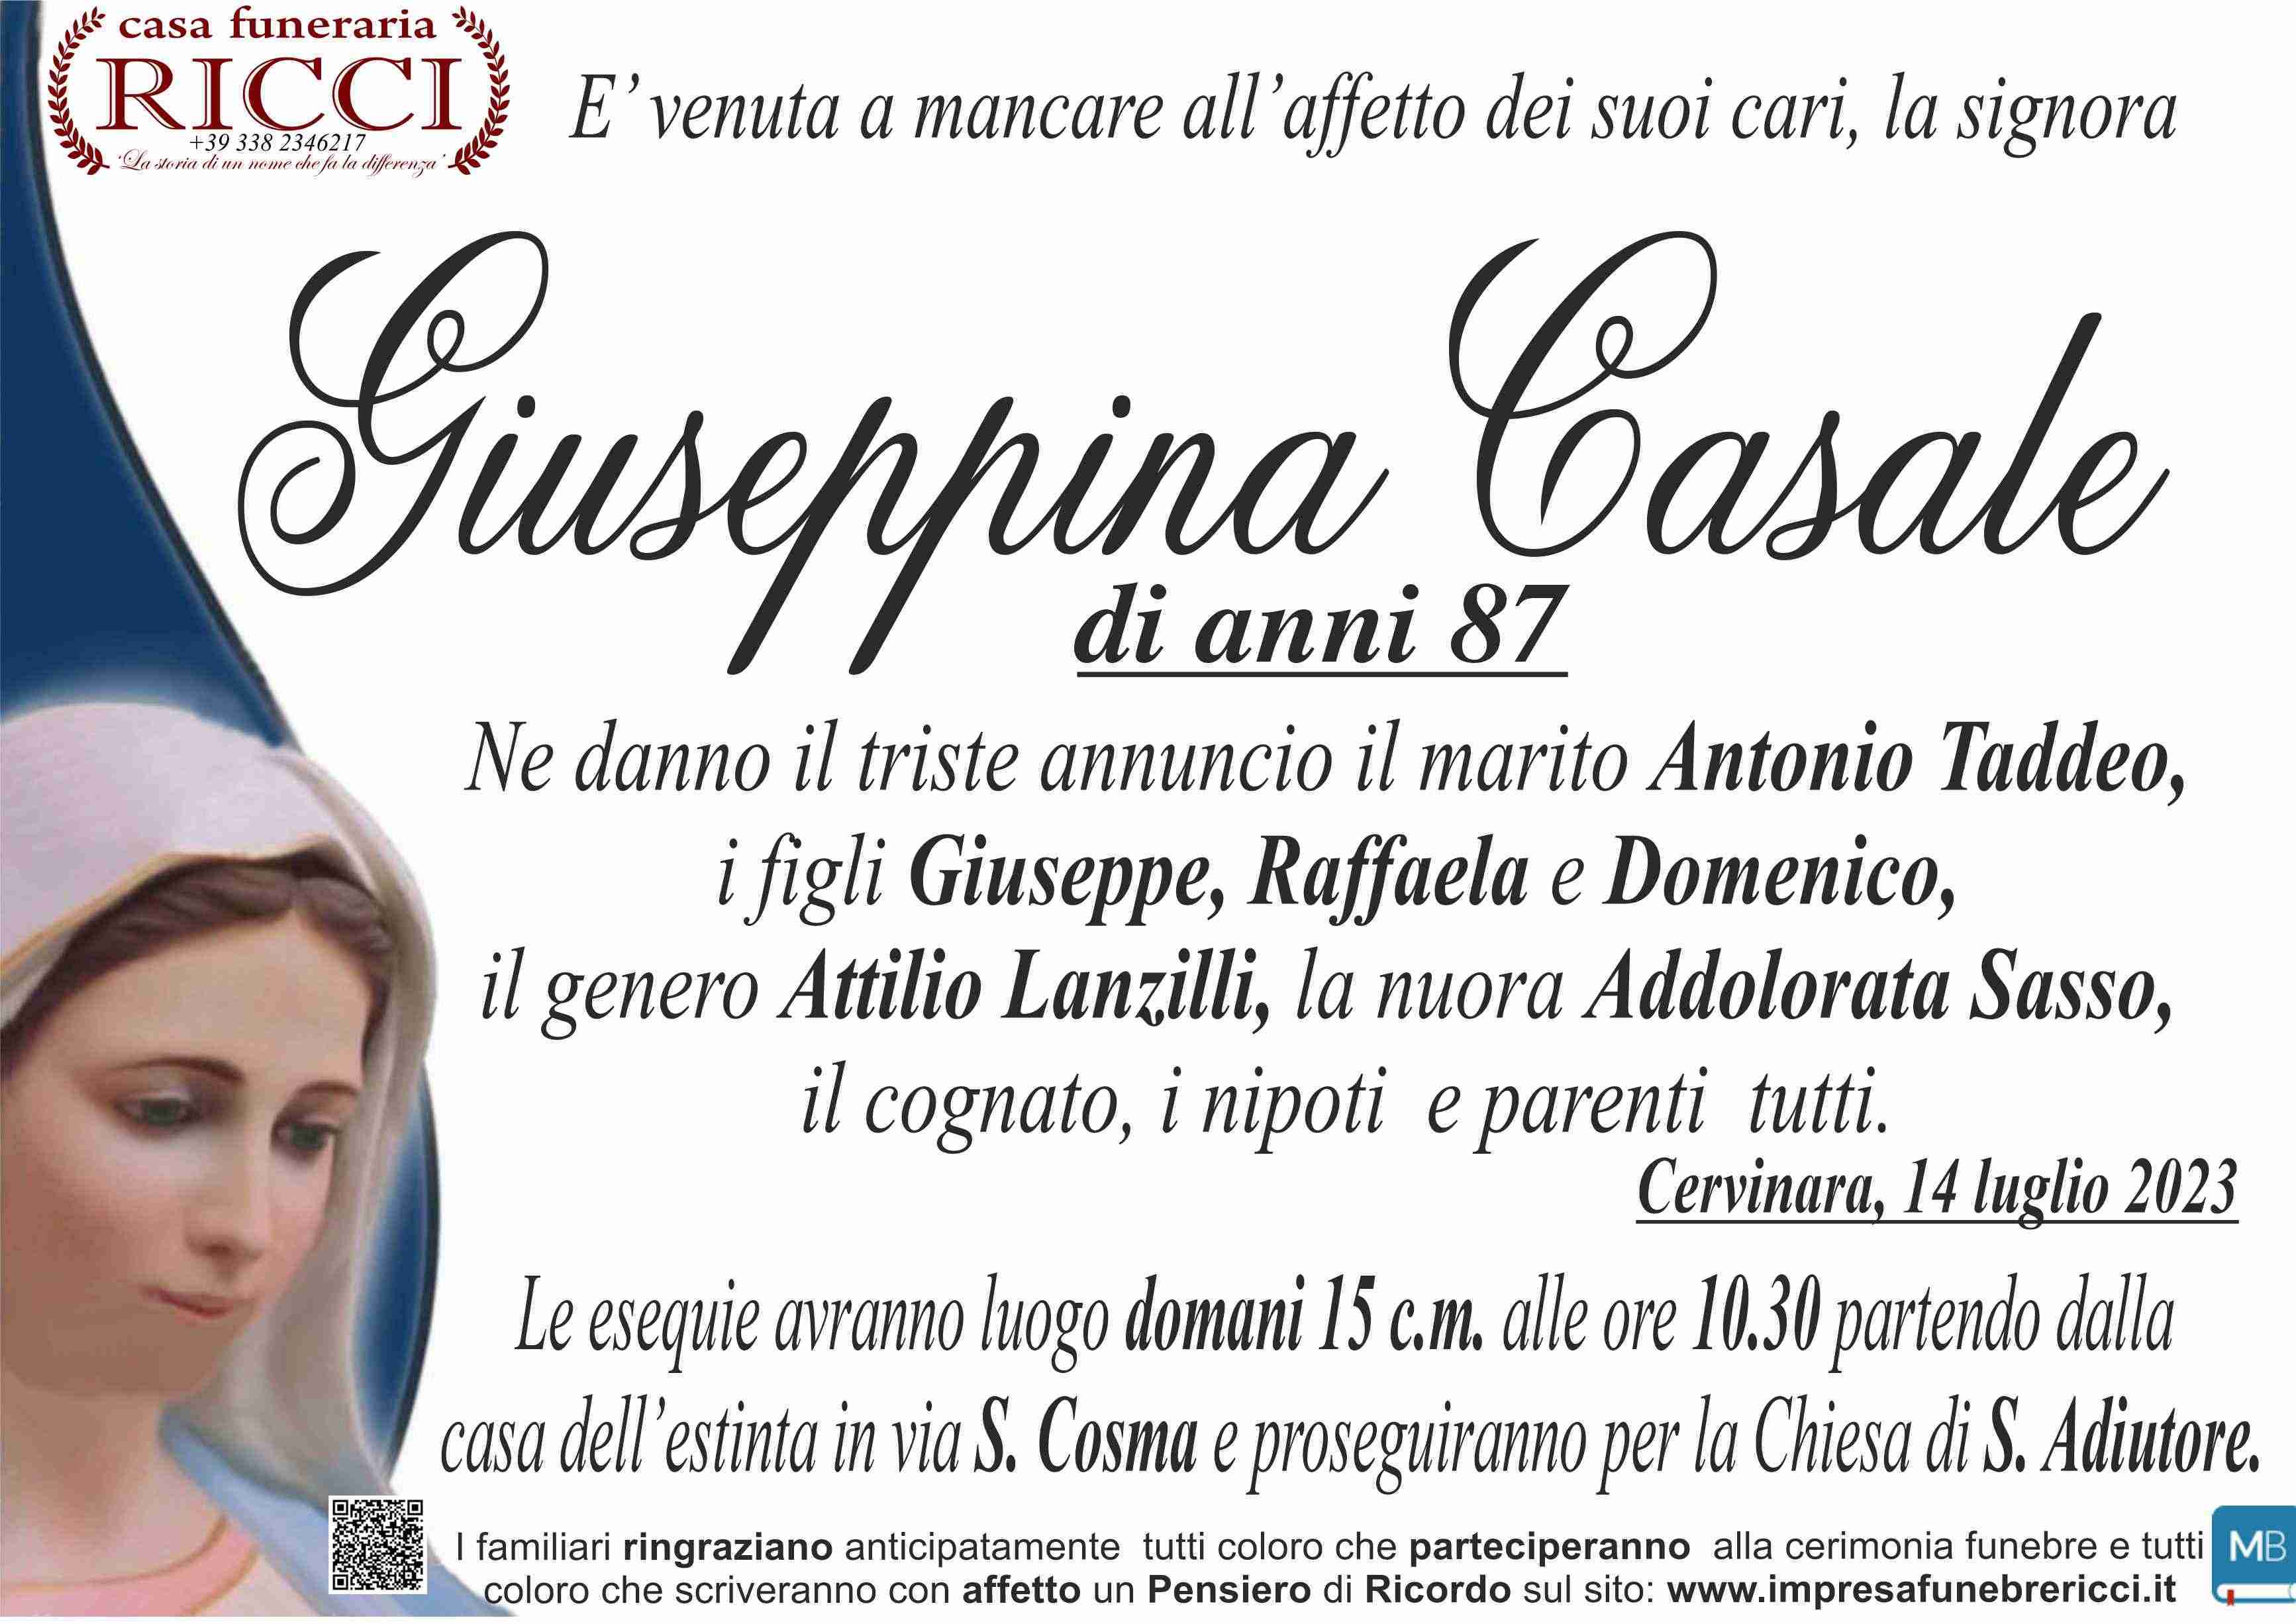 Giuseppina Casale